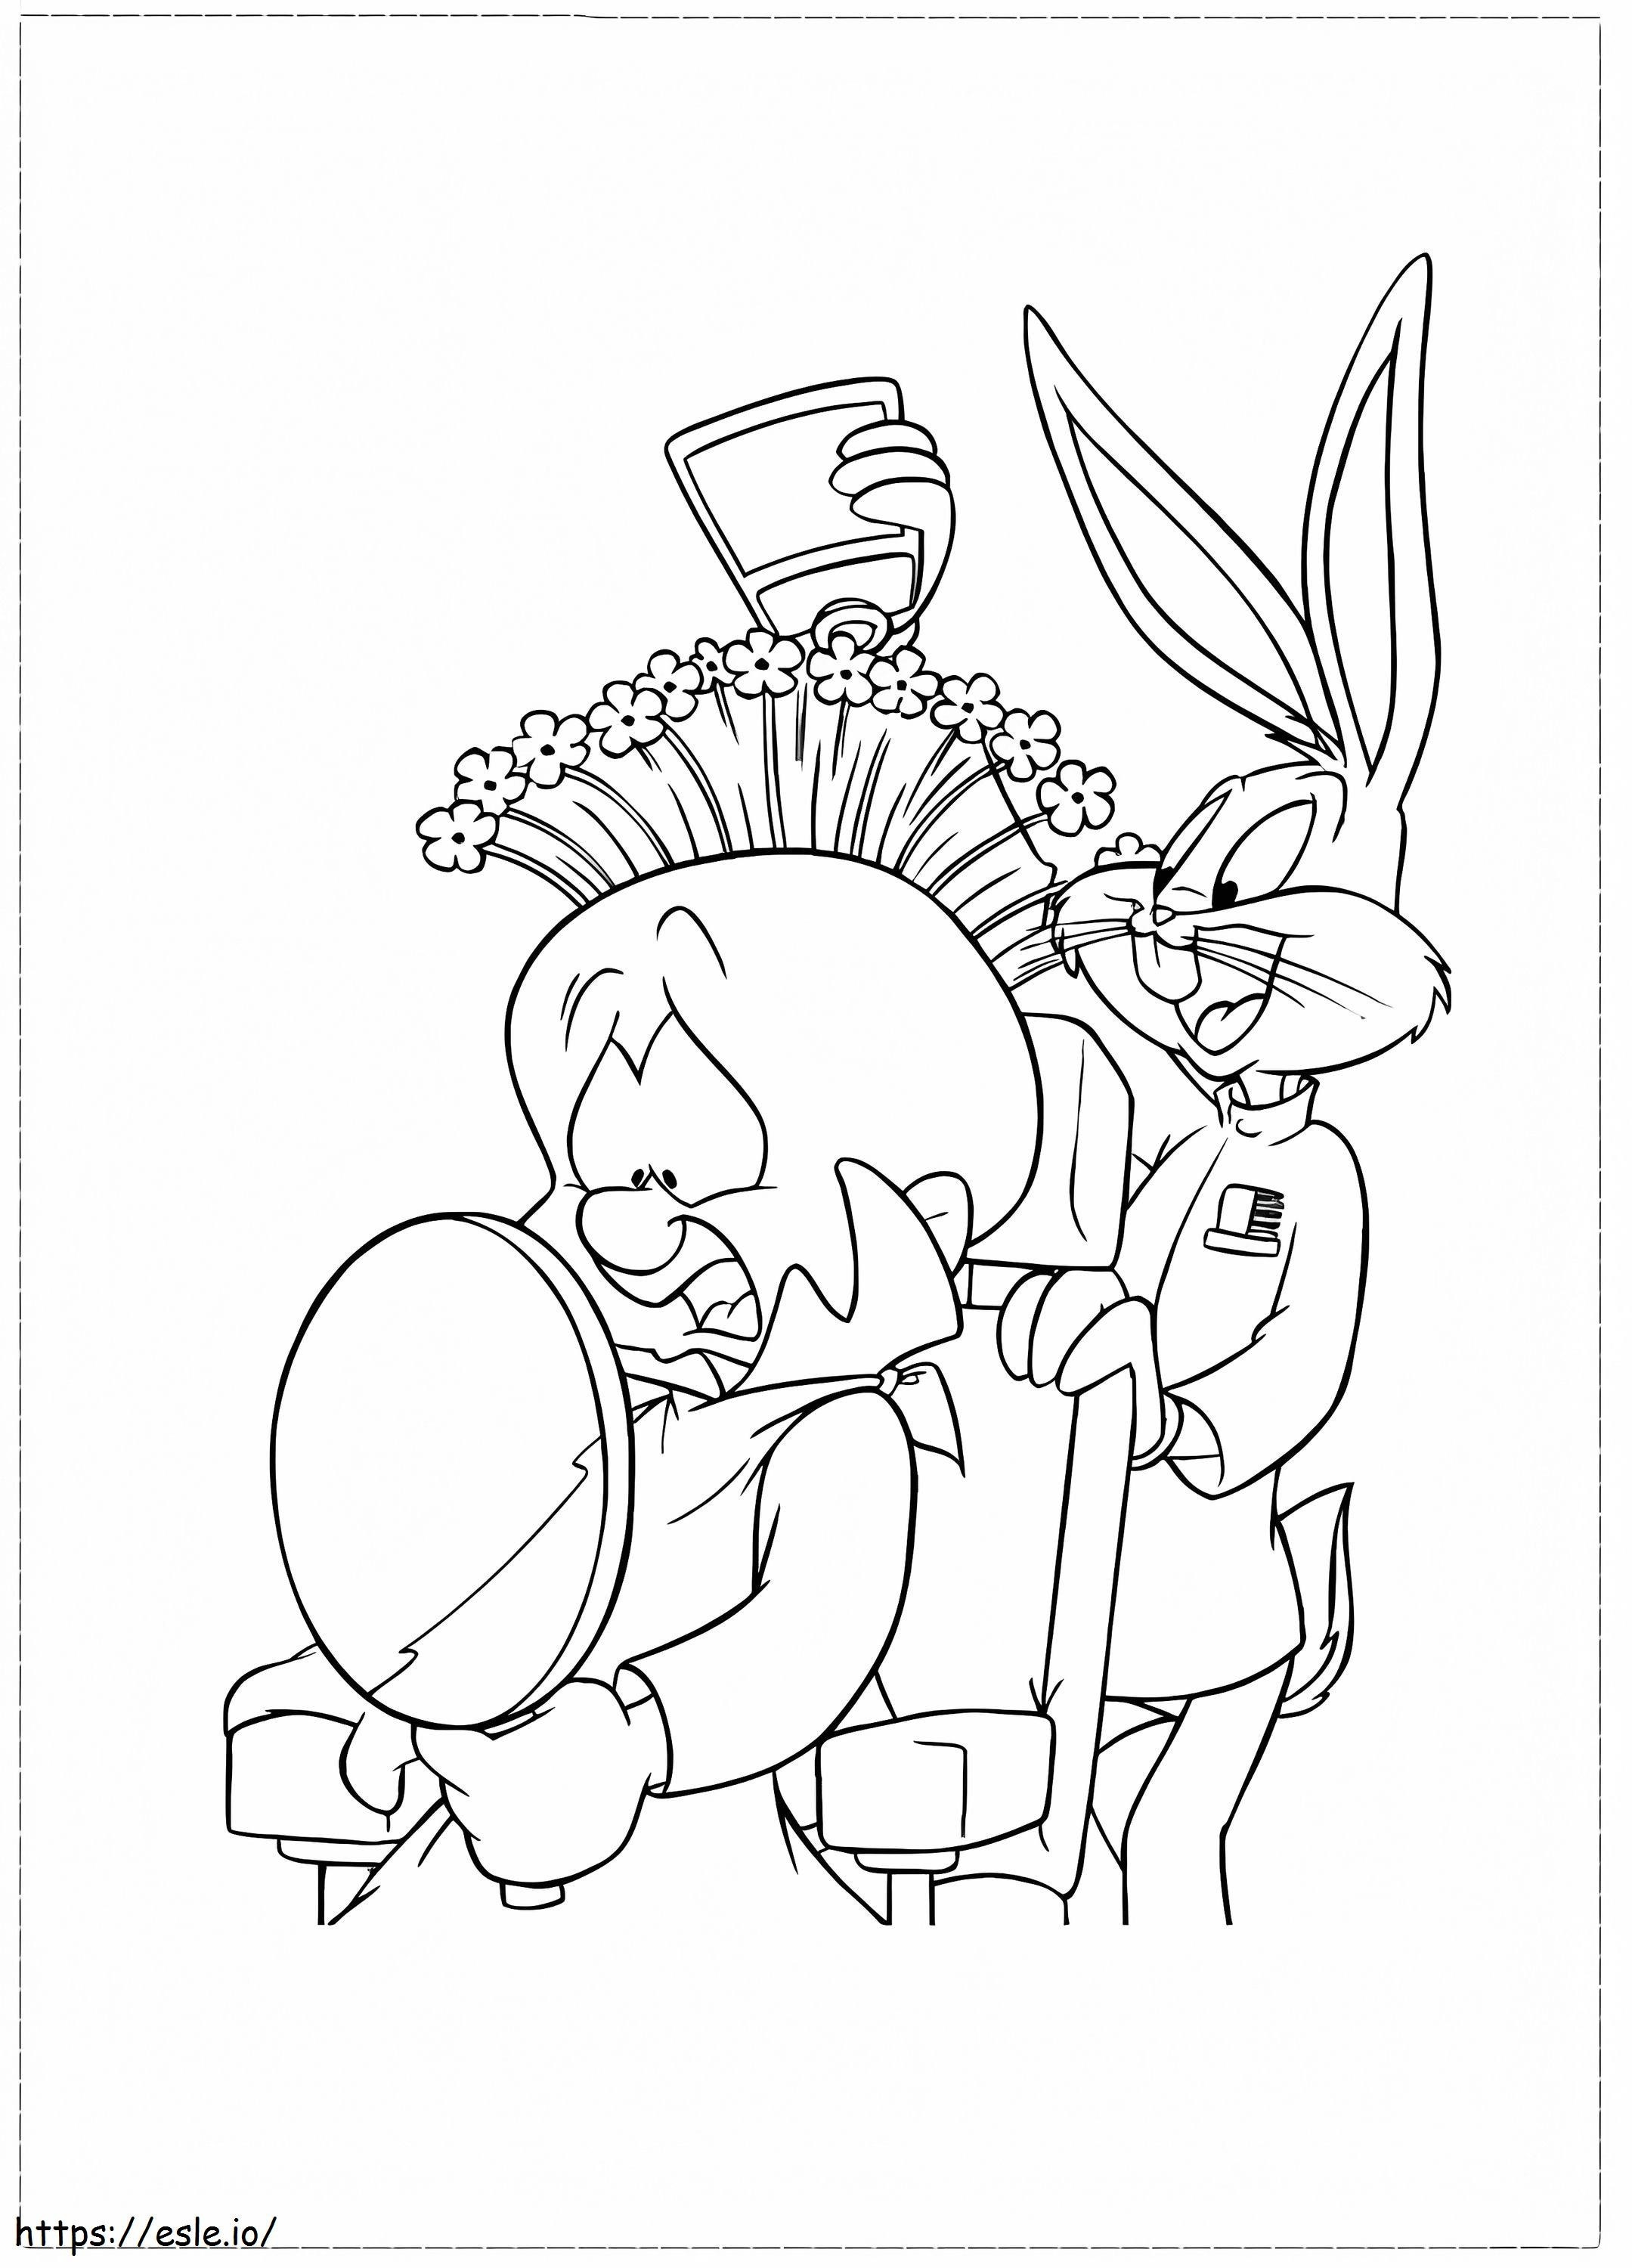 Bugs Bunny ve Elmer Fudd 1 boyama